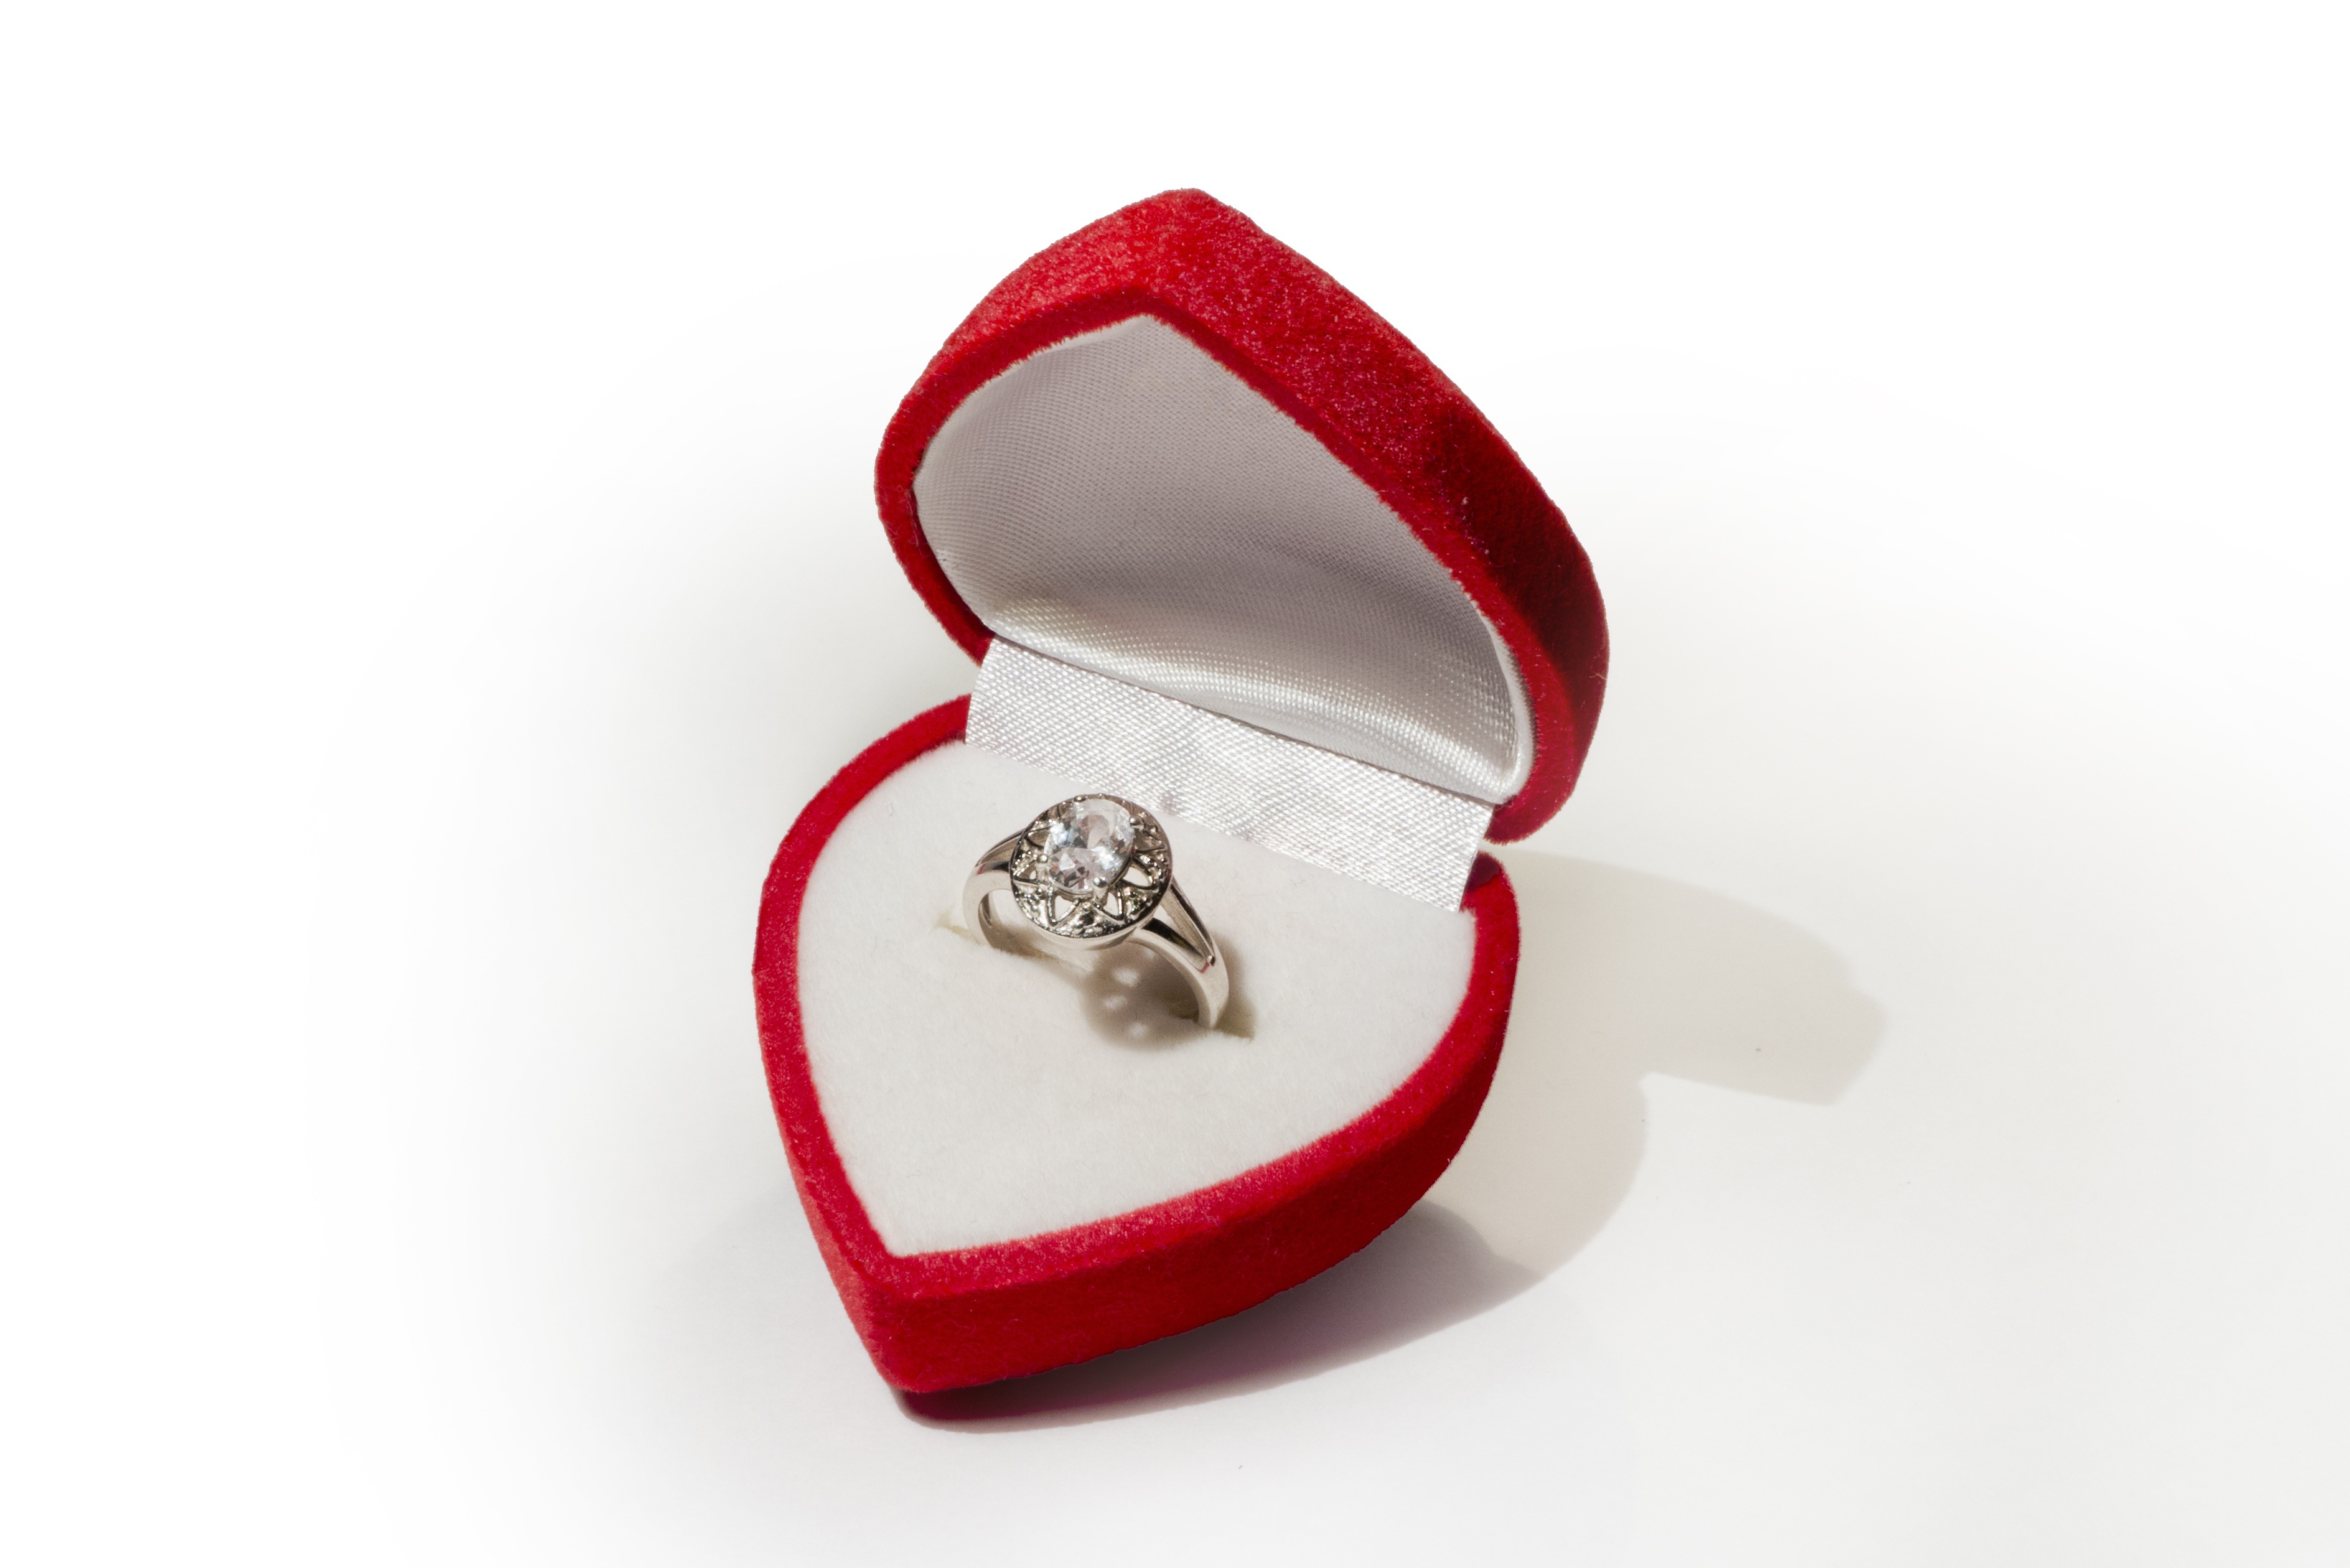 Получить кольцо в подарок. Кольцо в коробочке. Обручальное кольцо в коробочке. Кольцо для предложения. Свадебные кольца в коробочке.